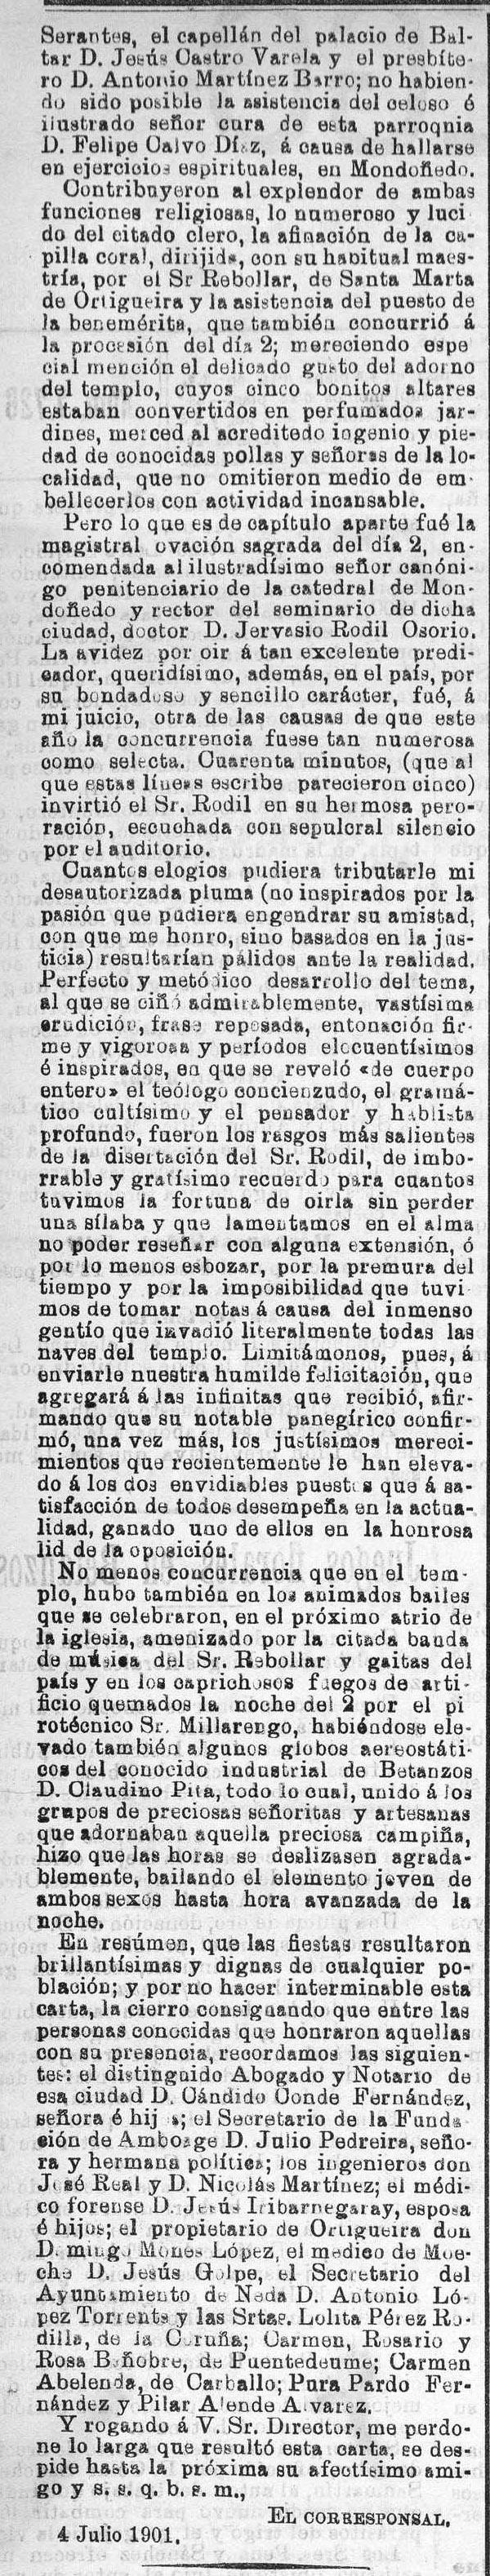 festas-de-santa-correo-gallego-6-7-1901